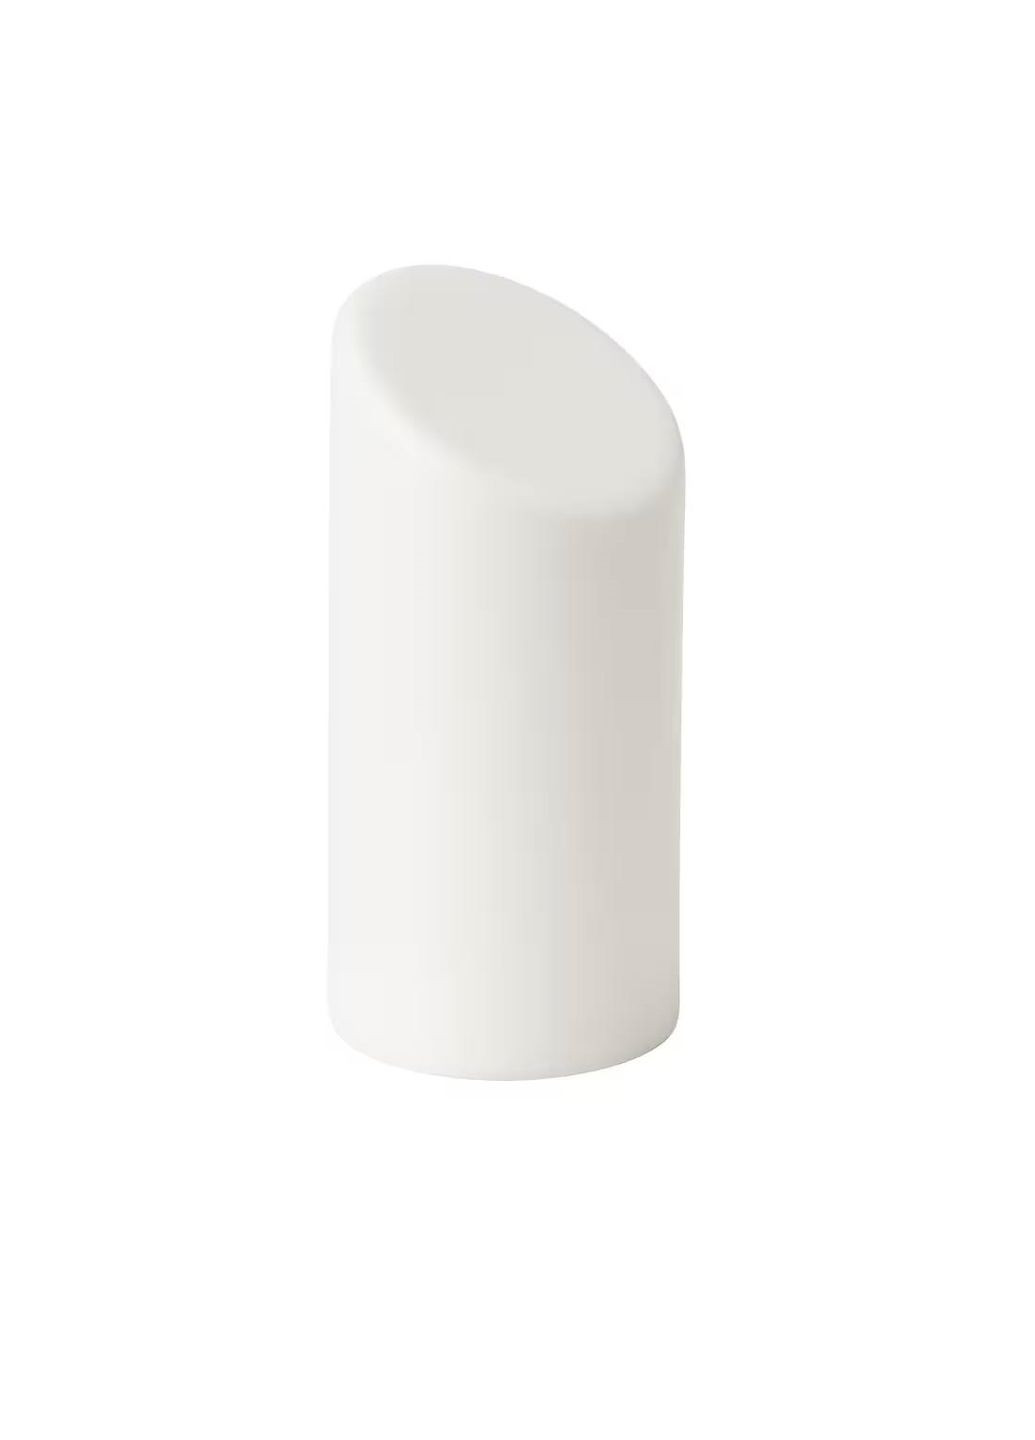 Светодиодная блок-свеча, белая/внутренняя/наружная,16 см IKEA ädellövskog (264055969)